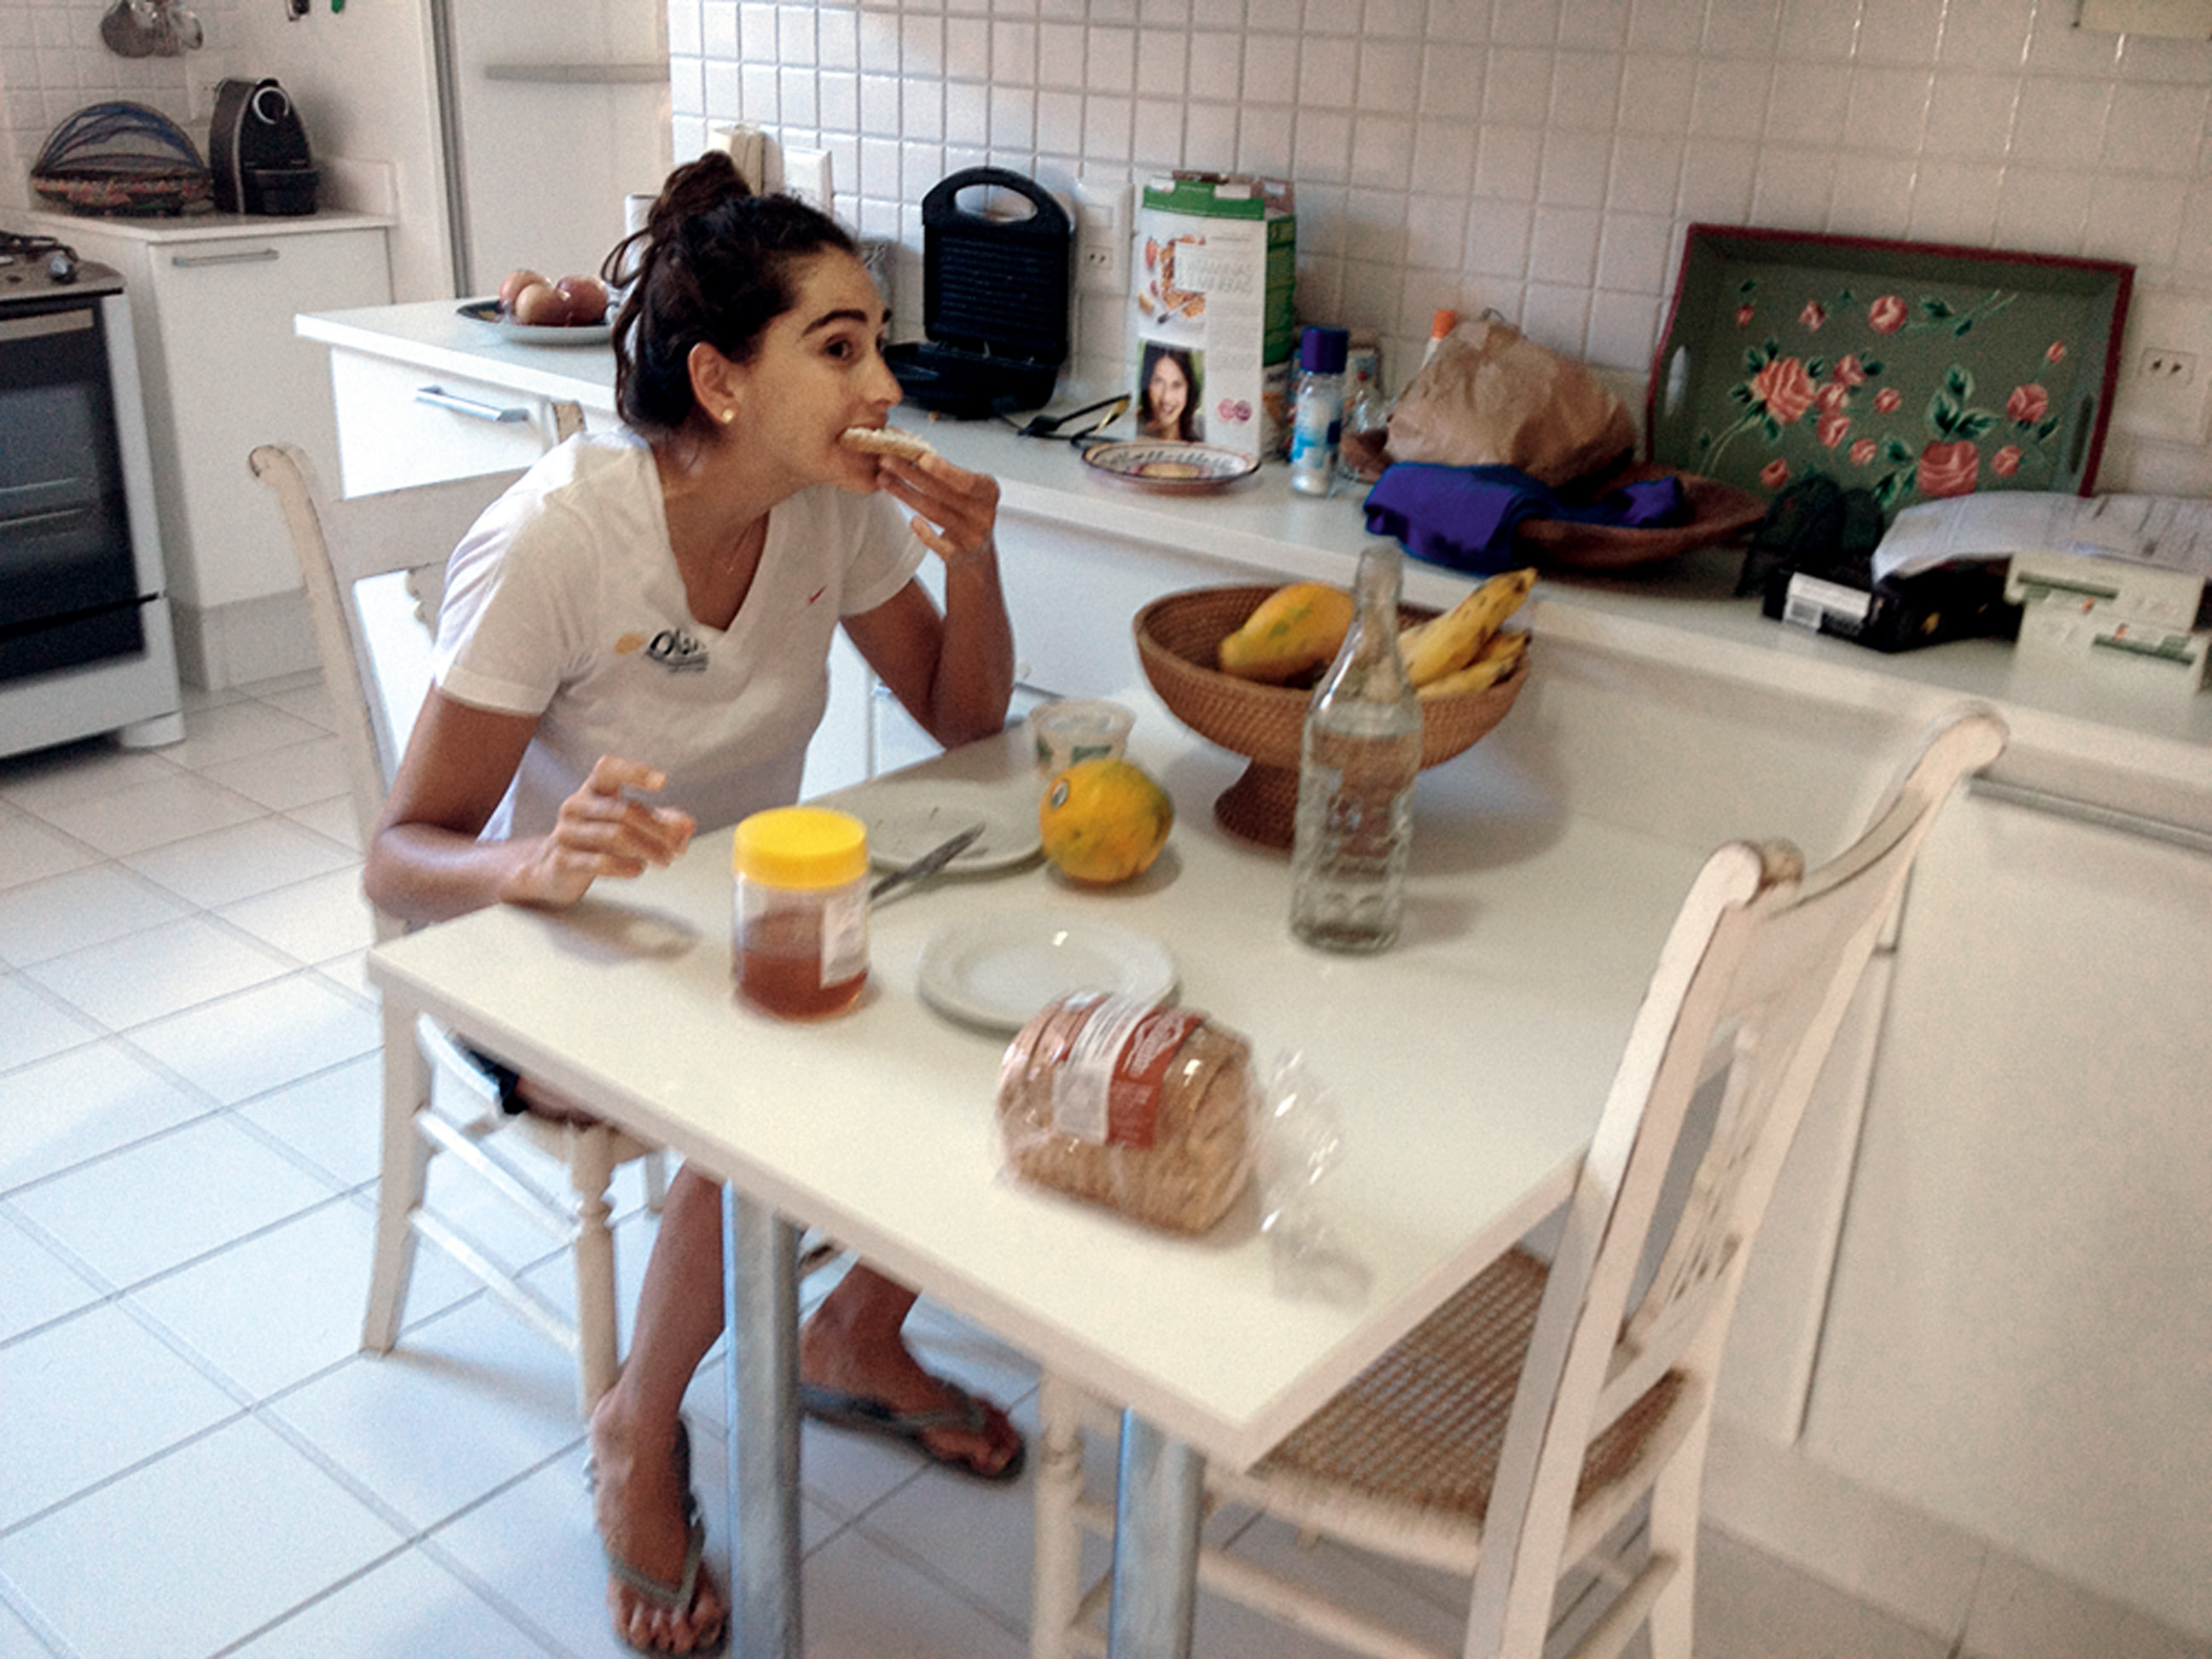 06:30 - “Acordo e tomo um café da manhã reforçado. É essencial para começar meu dia corrido.”